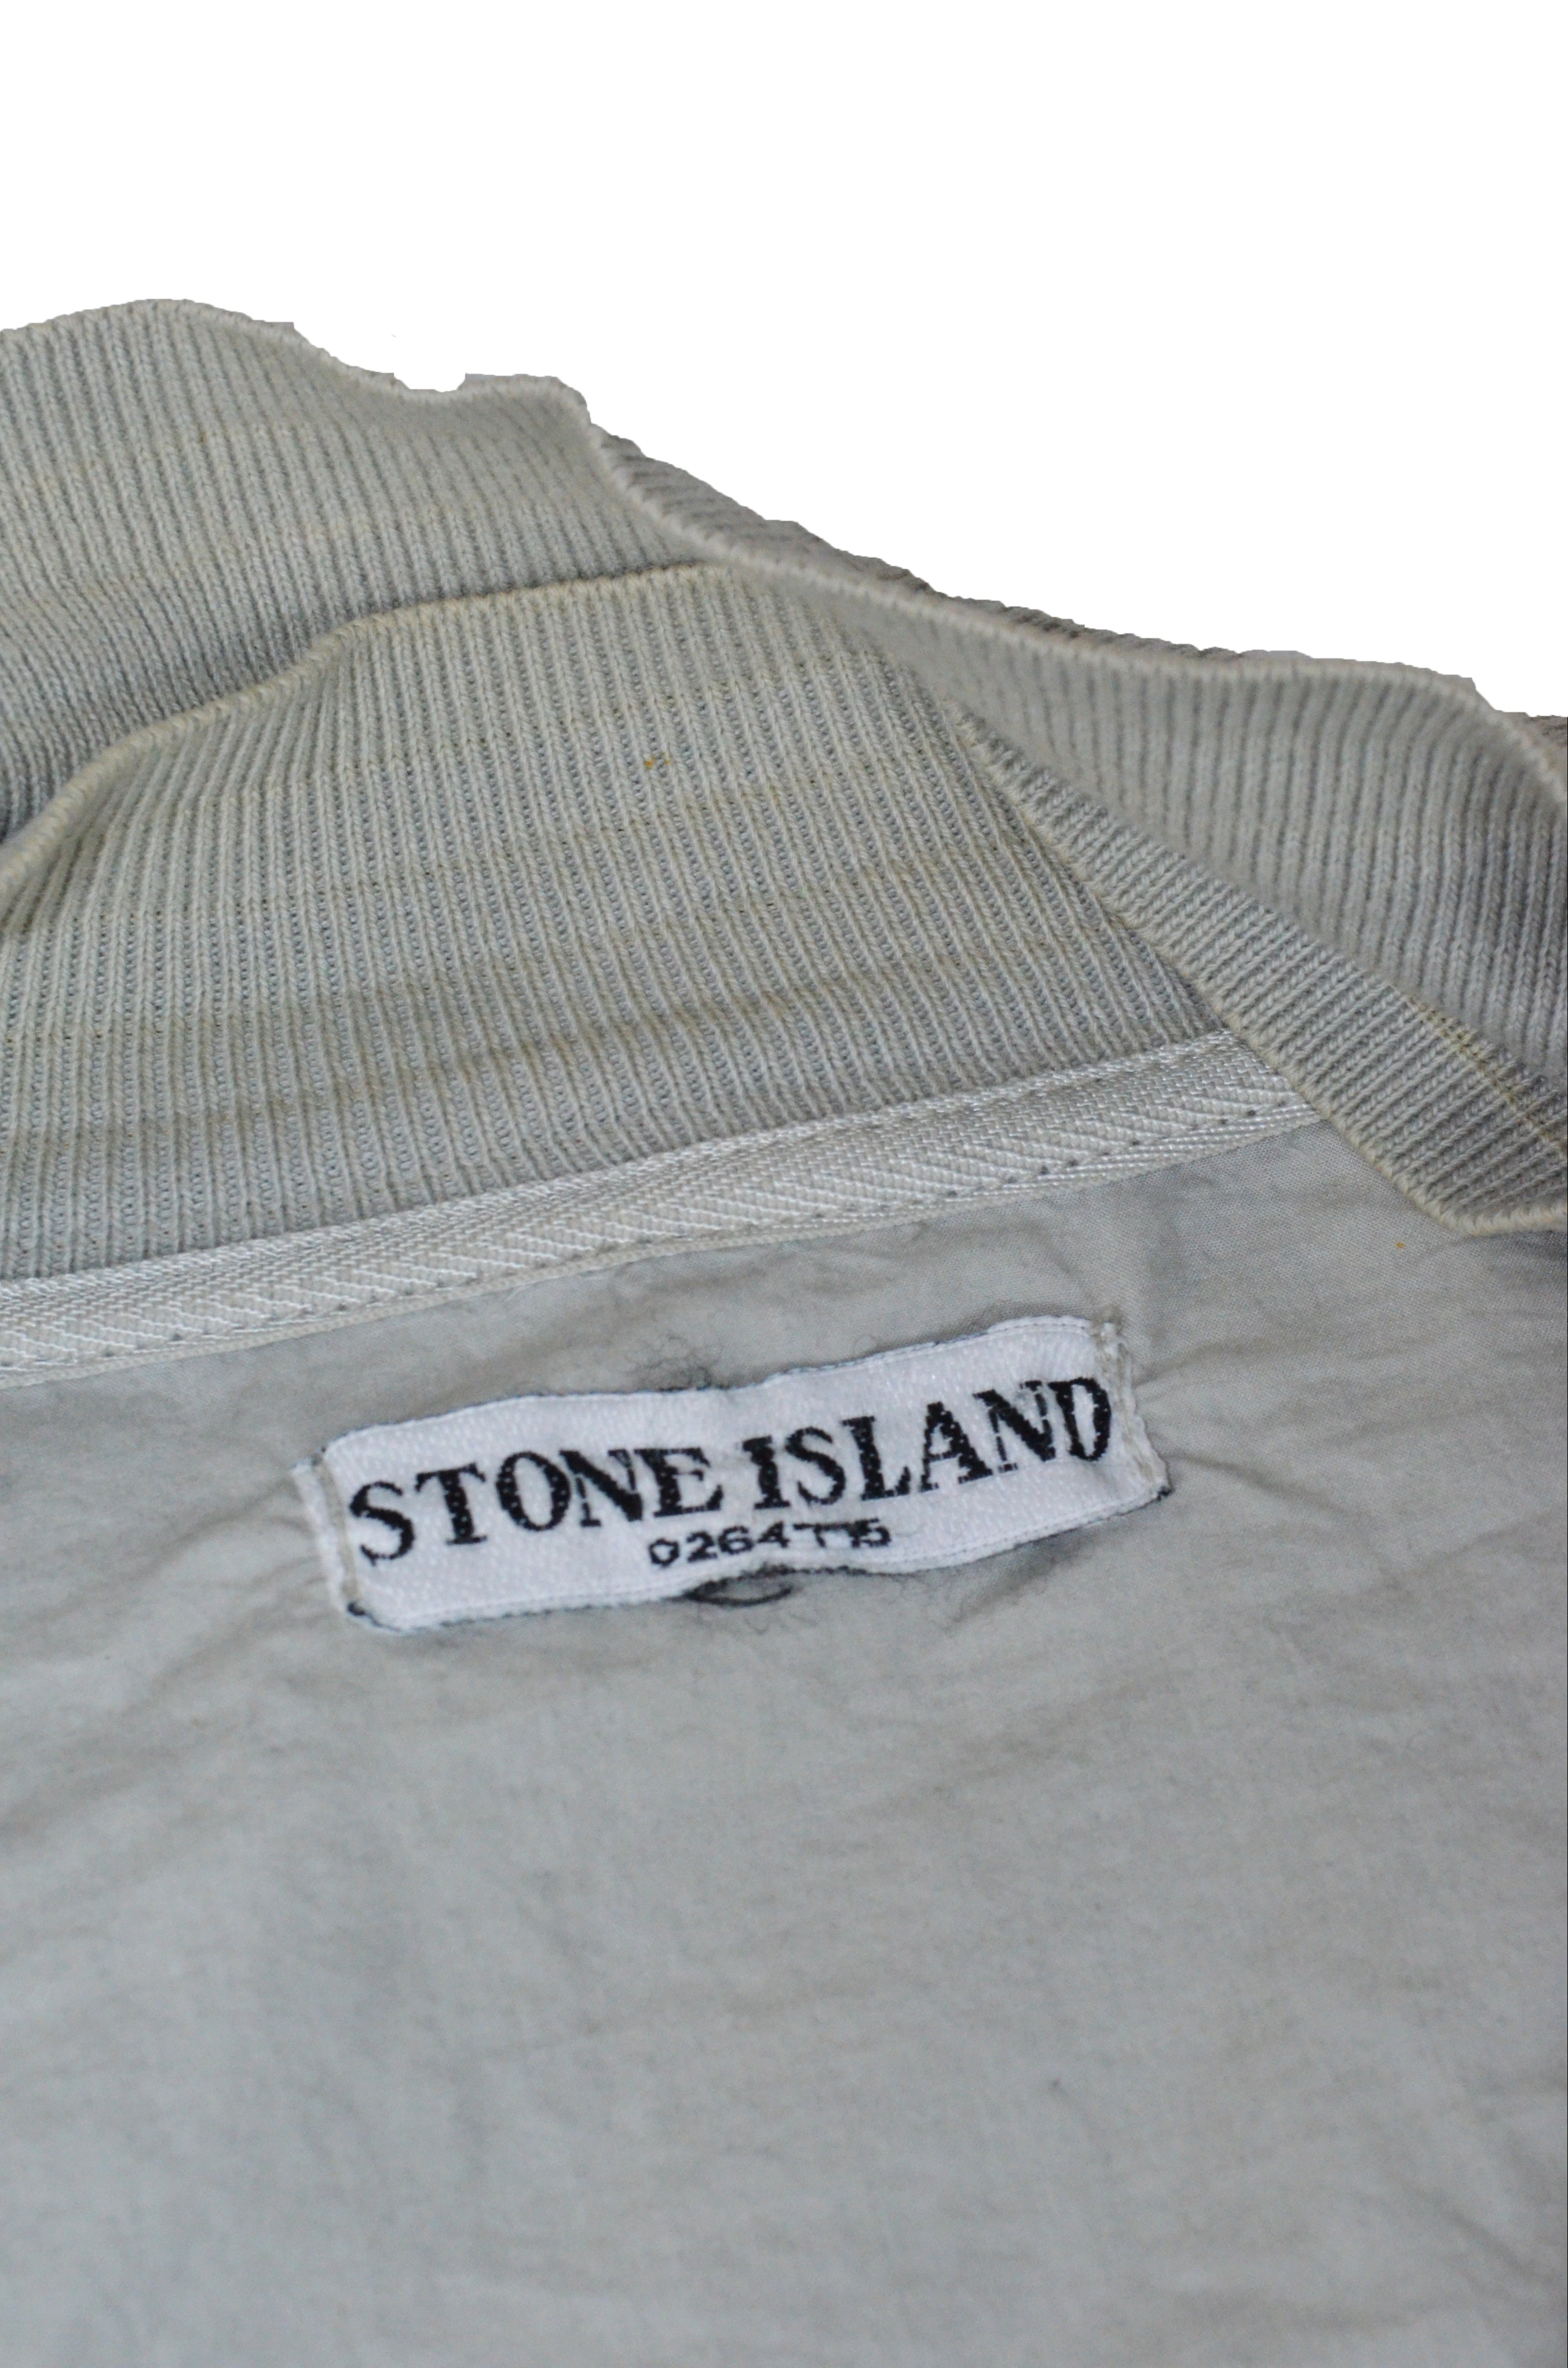 90's Stone Island Jacket